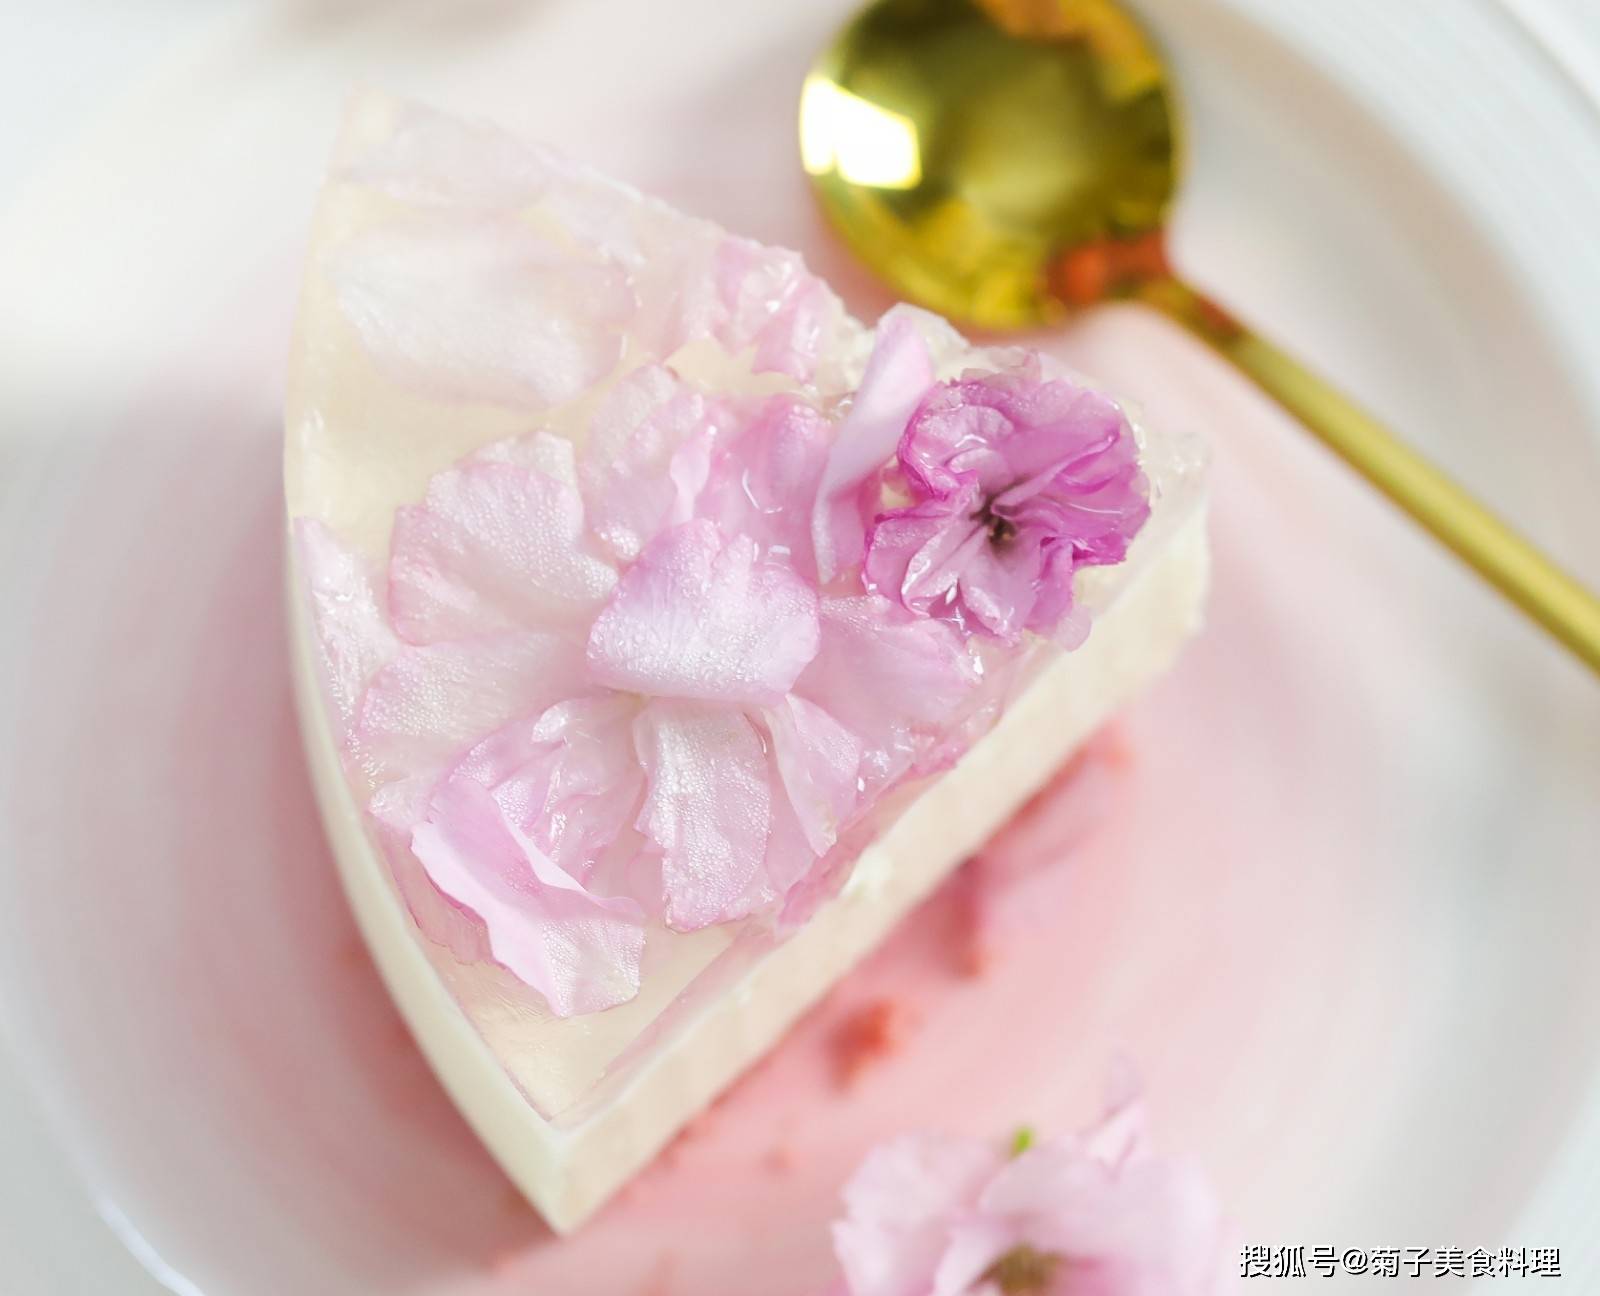 【水晶镜面樱花蛋糕】神奇的樱花吃法又增加了！ - 哔哩哔哩